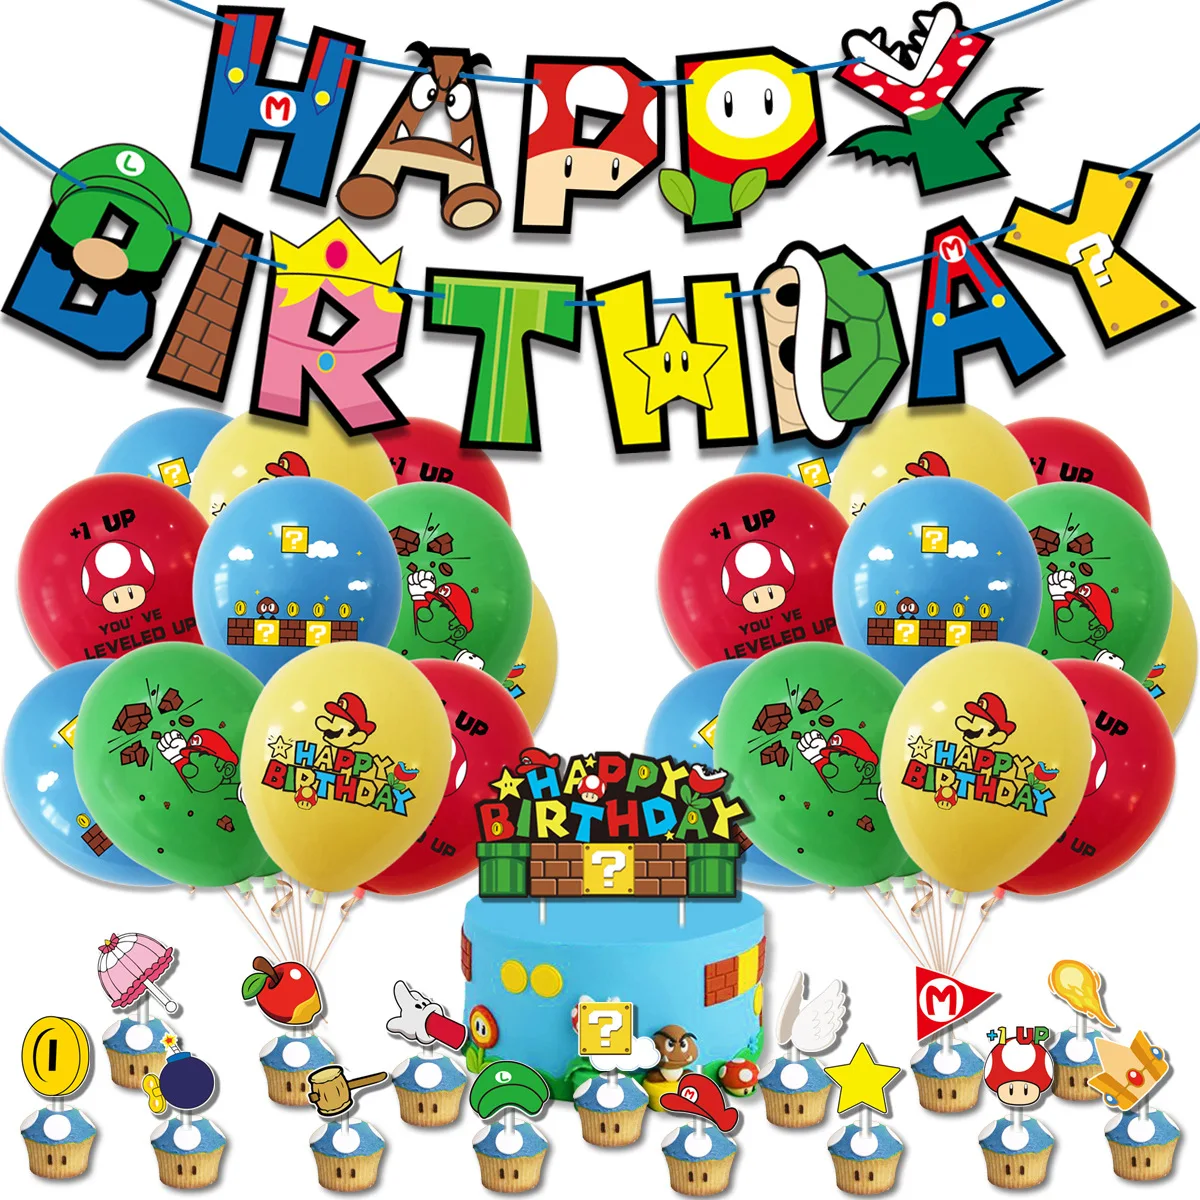 

Новинка, украшение для дня рождения в стиле Марио, буквенный флаг, флаг, открытка для торта, набор воздушных шаров, товары для оформления, дет...